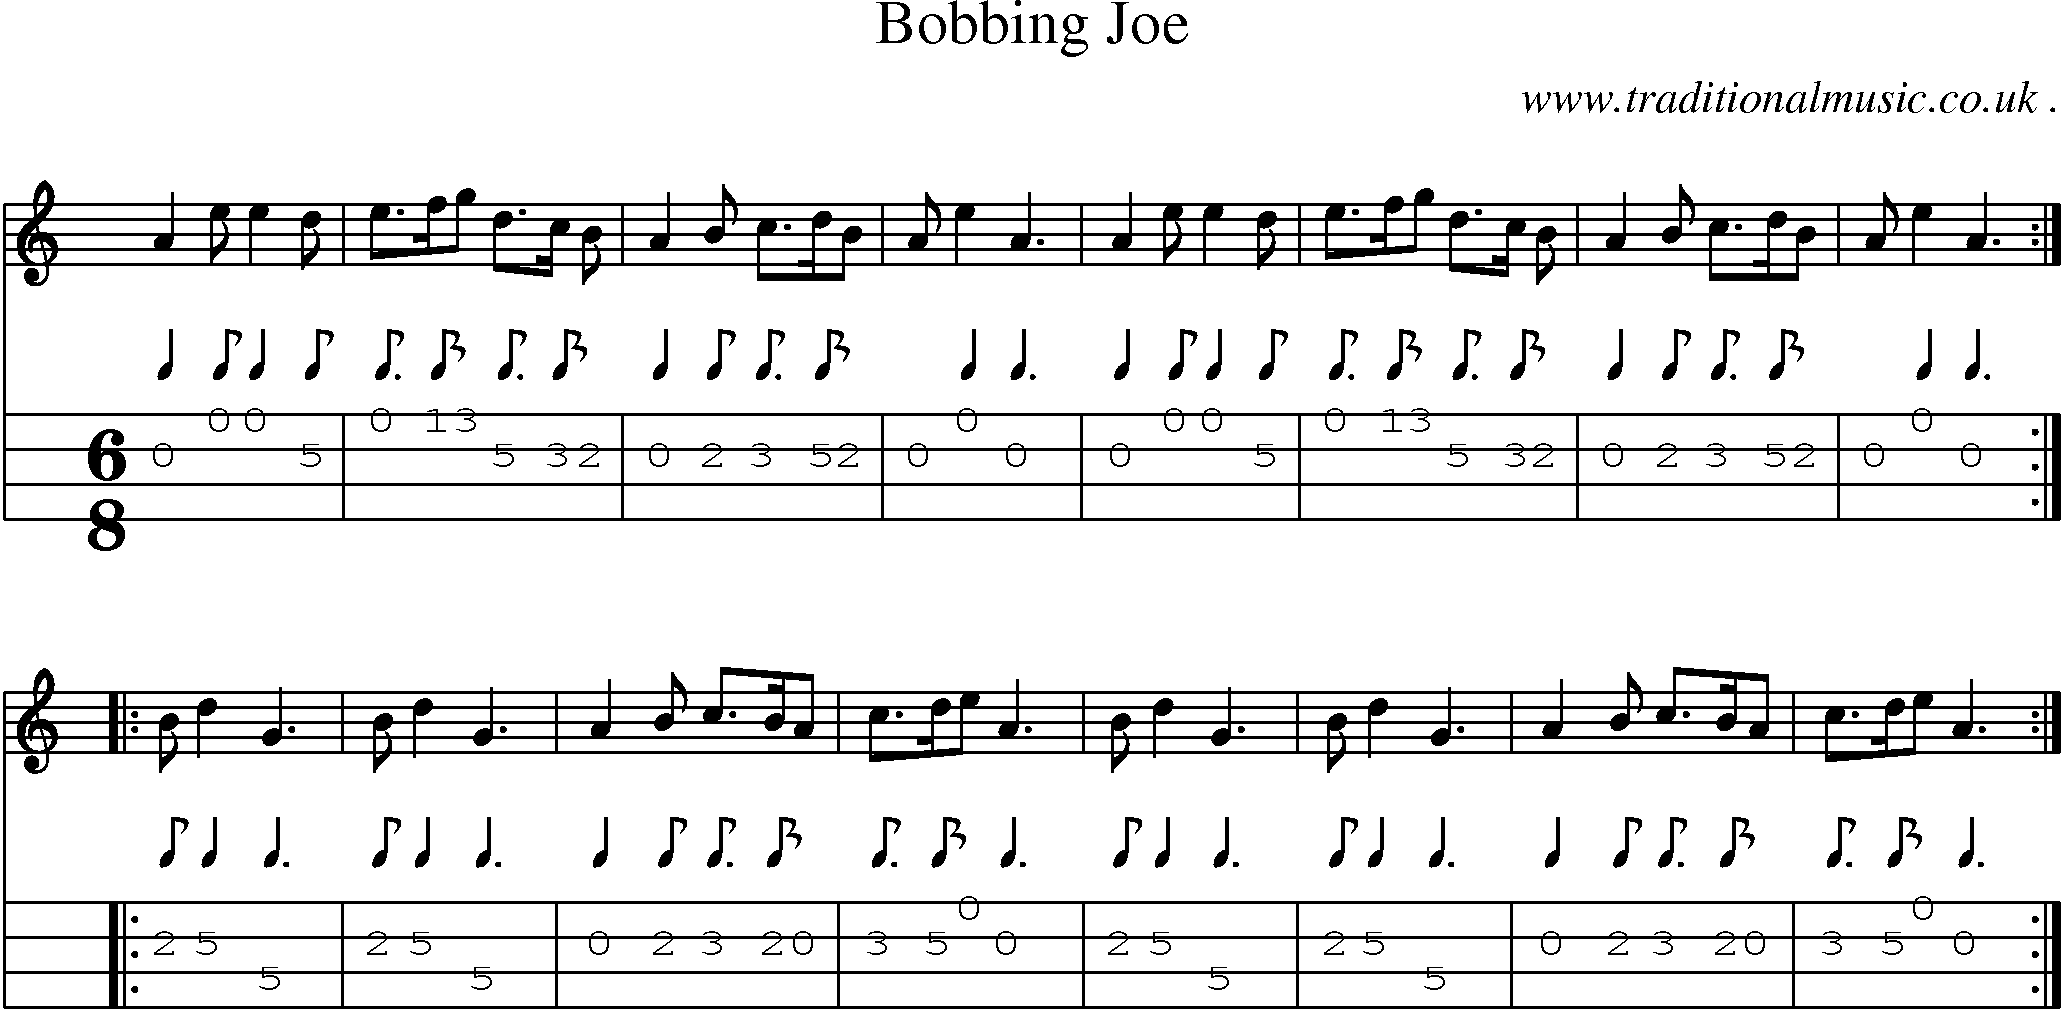 Sheet-Music and Mandolin Tabs for Bobbing Joe